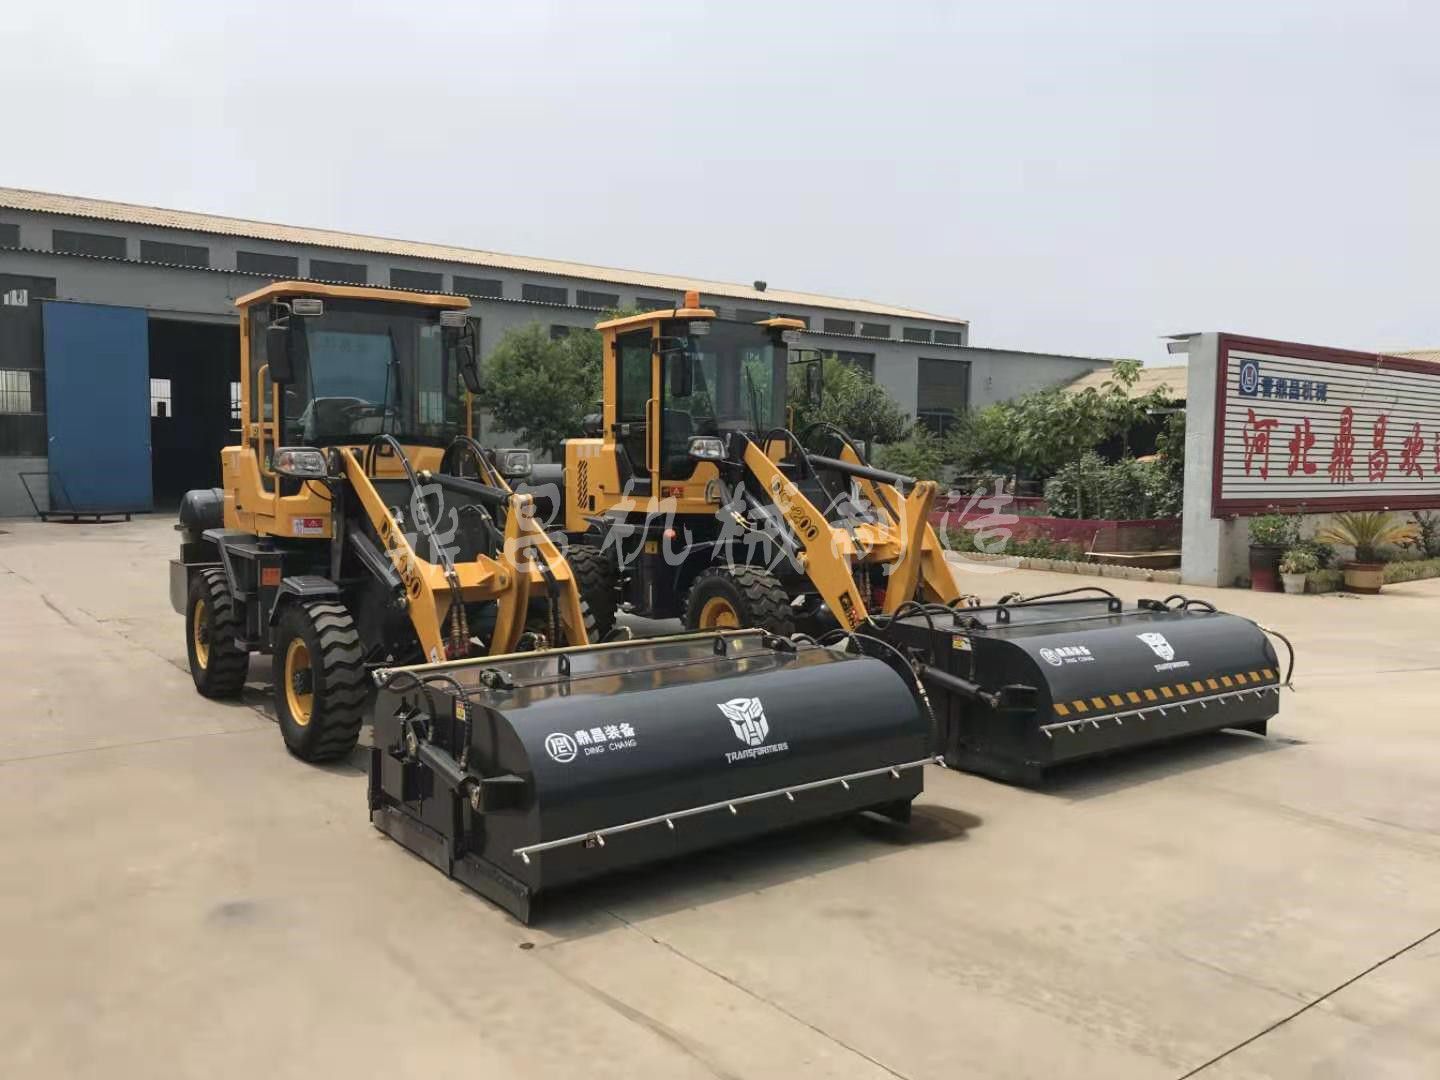 白城洮南小区物业扫雪车中国供大于求的状况正在破坏贸易格局